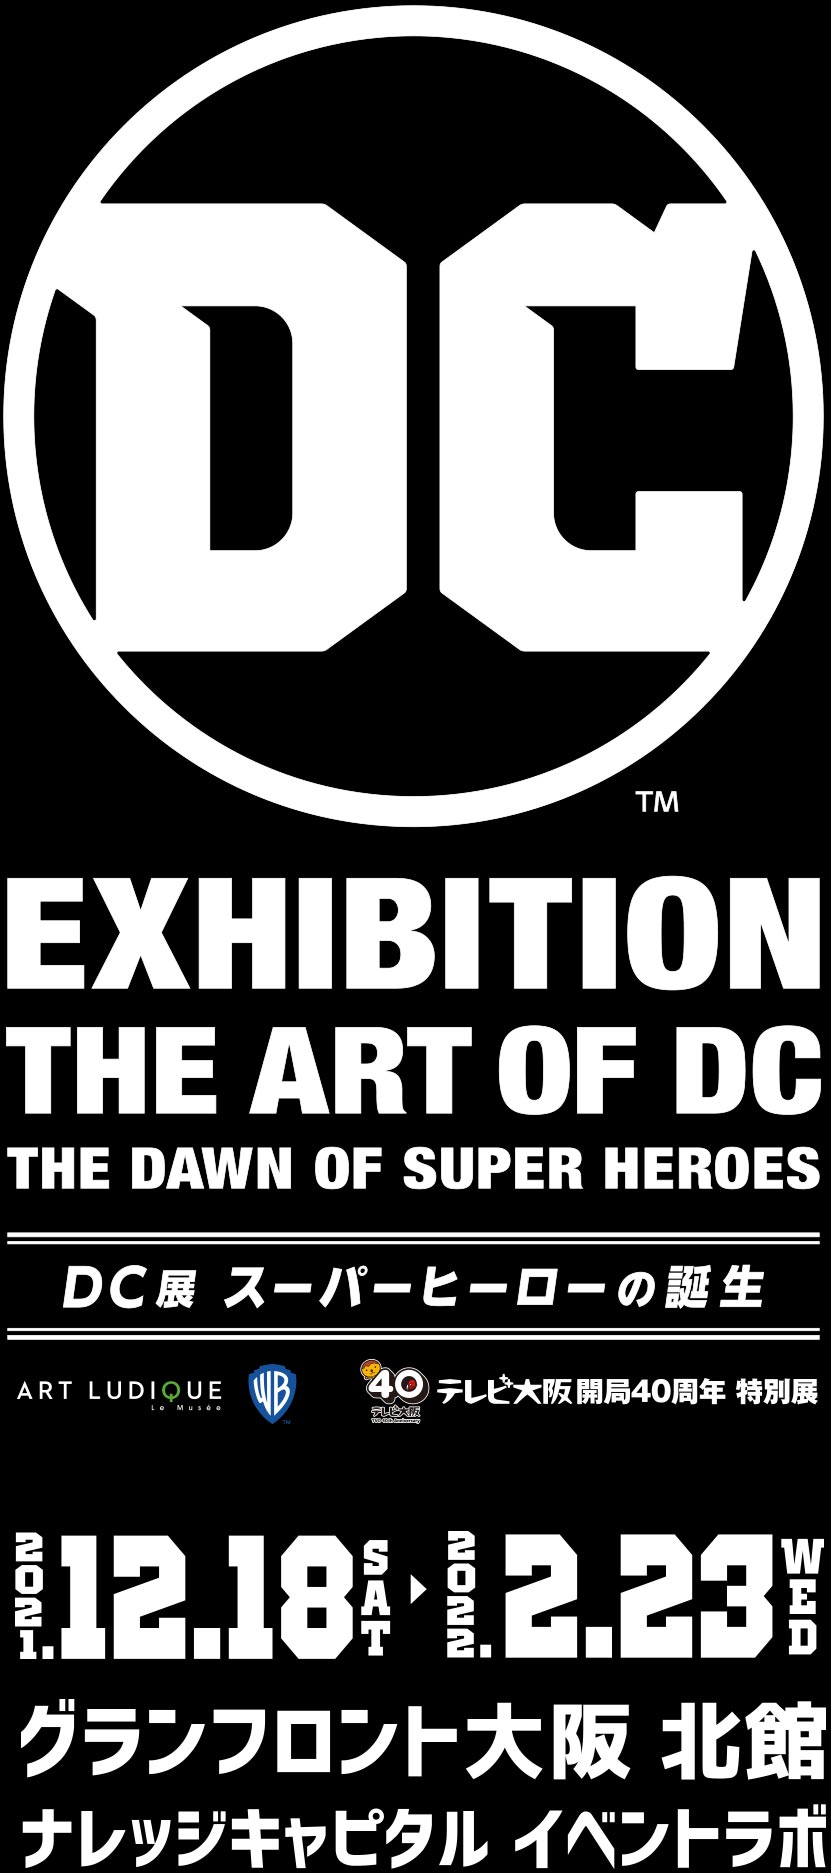 最大級のアメコミ出版社・DCの特別総合展が日本初登場！世界的に人気を博すバットマンやスーパーマン、キャラクター単体で映画化され日本国内でも大人気となったジョーカー、ハーレイ・クイン、ワンダーウーマンなど、「スーパーヒーロー」と「スーパーヴィラン」をはじめとしたDCのキャラクターたちと、その物語を紹介します。2021年12月18日(土)～2022年2月23日(水･祝) グランフロント大阪北館 ナレッジキャピタル イベントラボで開催！